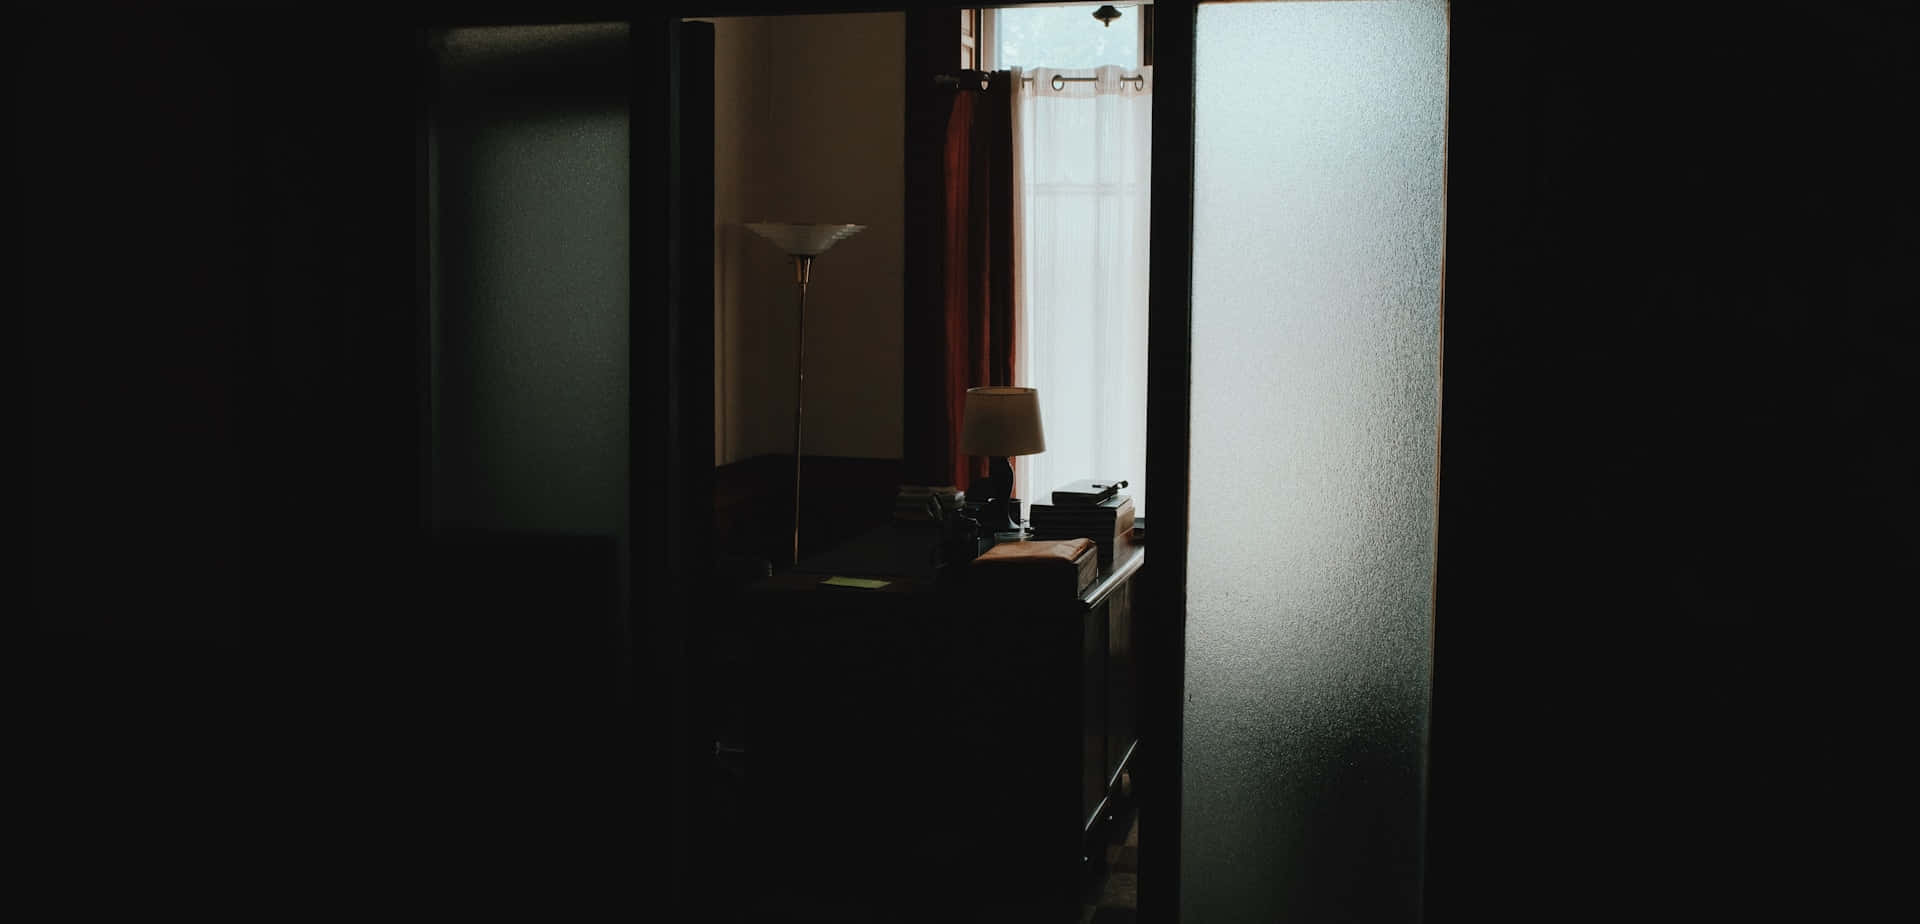 Dark Room With Sunlit Window.jpg Wallpaper